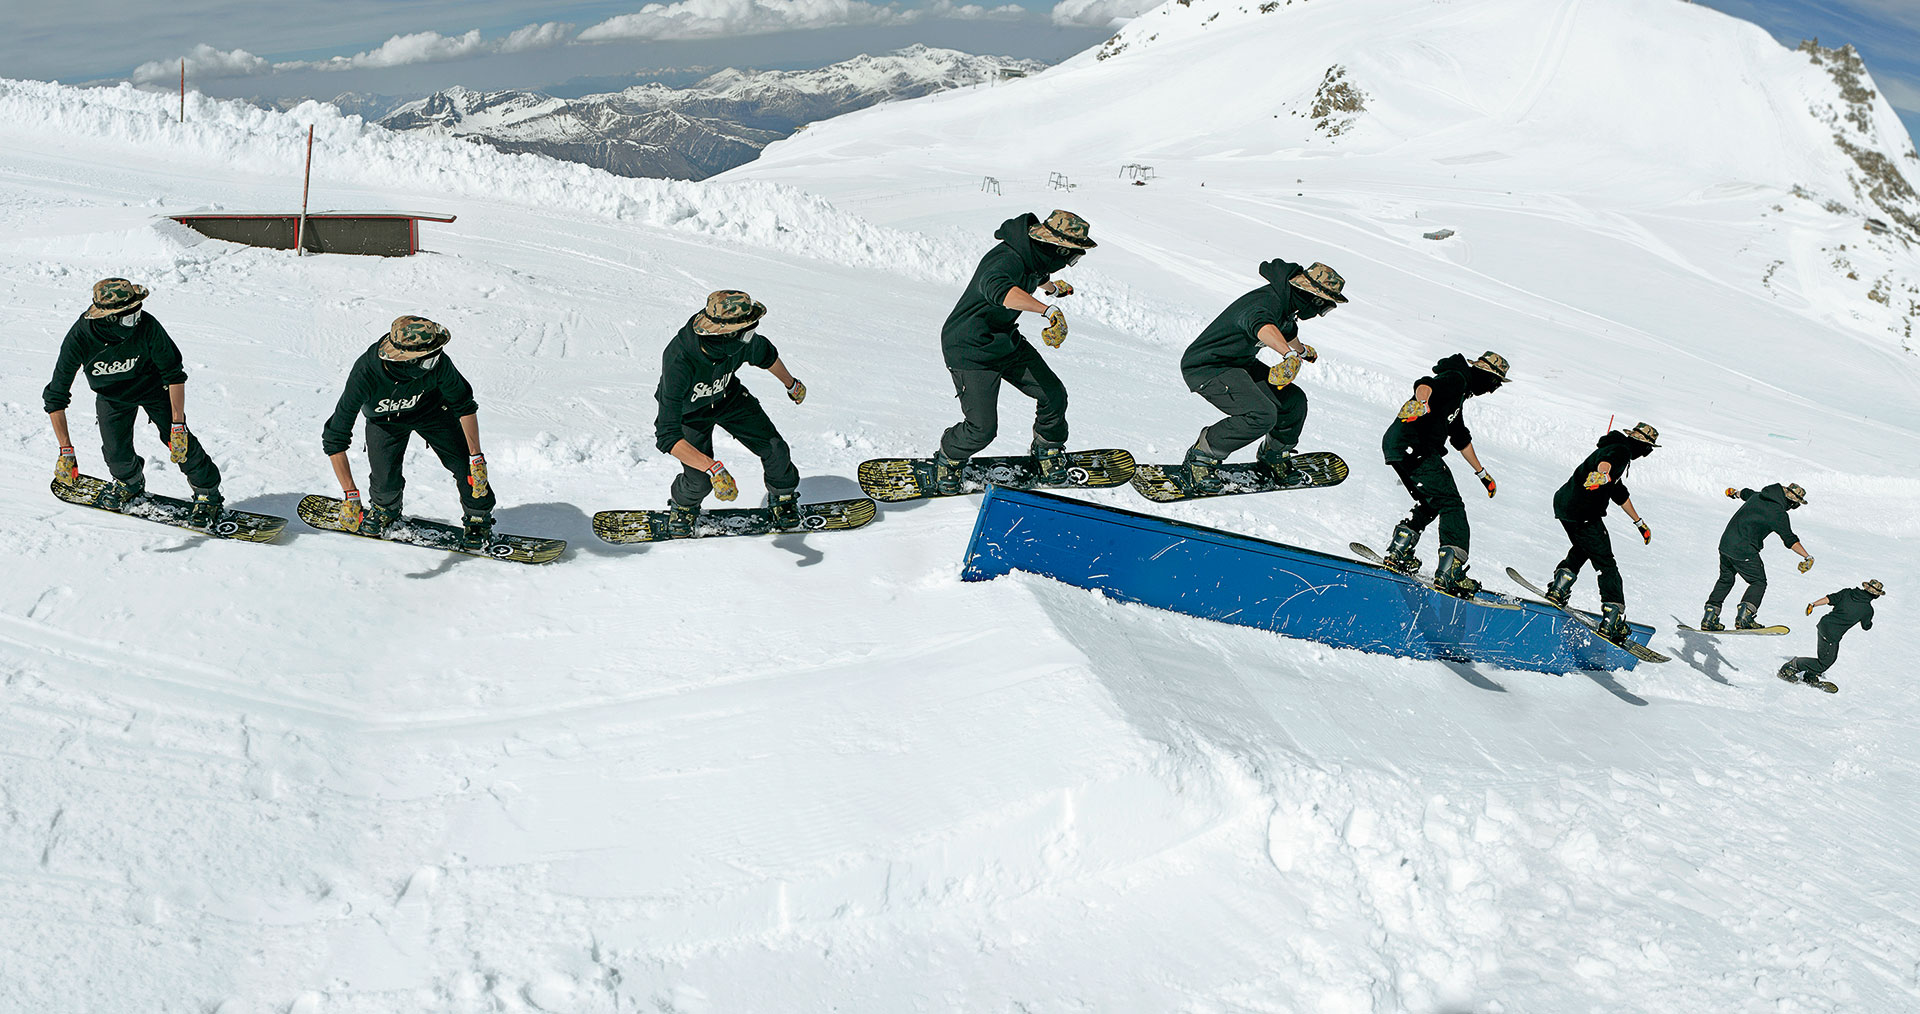 Trick Tipps Snowboarder Mbm inside snowboard tricks und tipps for Home